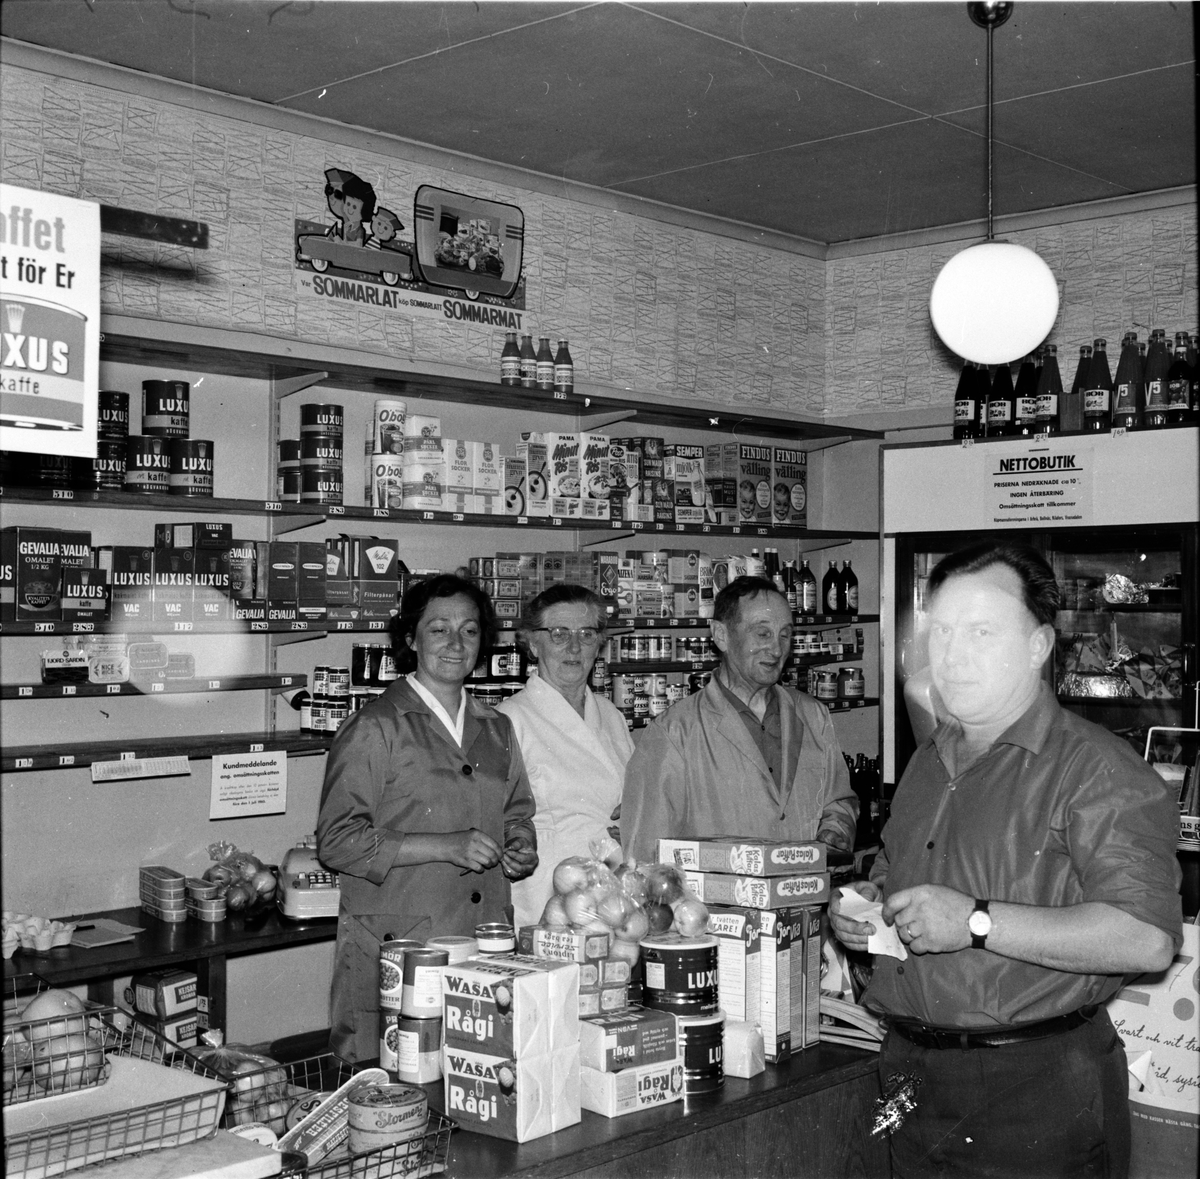 Jerdslings affär upphör,
25 Juni 1965